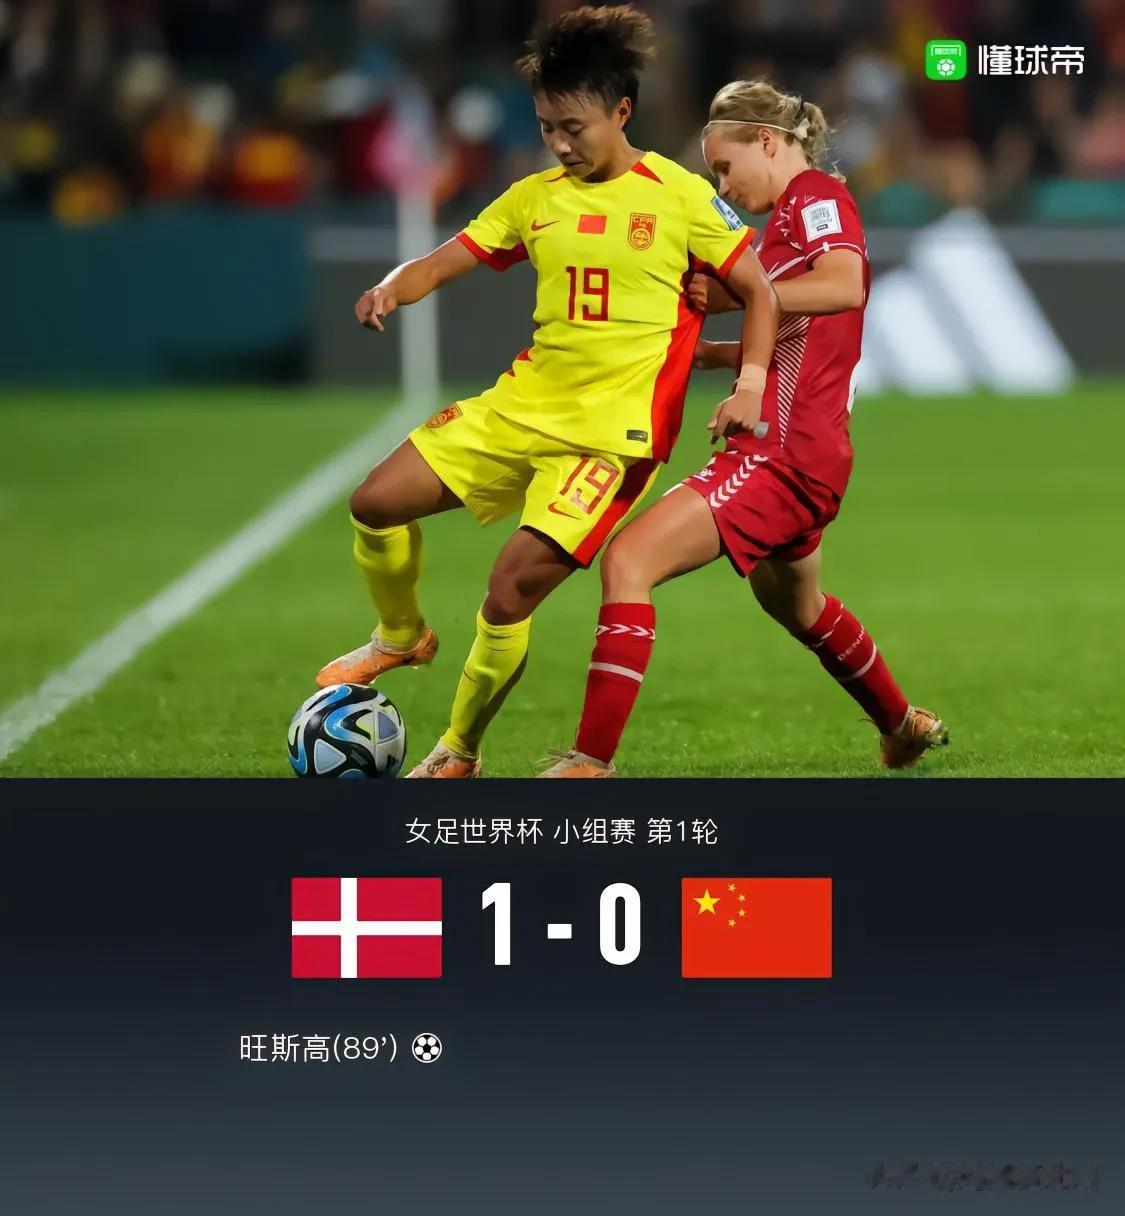 女足大概率小组出线不了

输给了直接竞争对手丹麦，而且女足几乎不可能拿下英格兰，